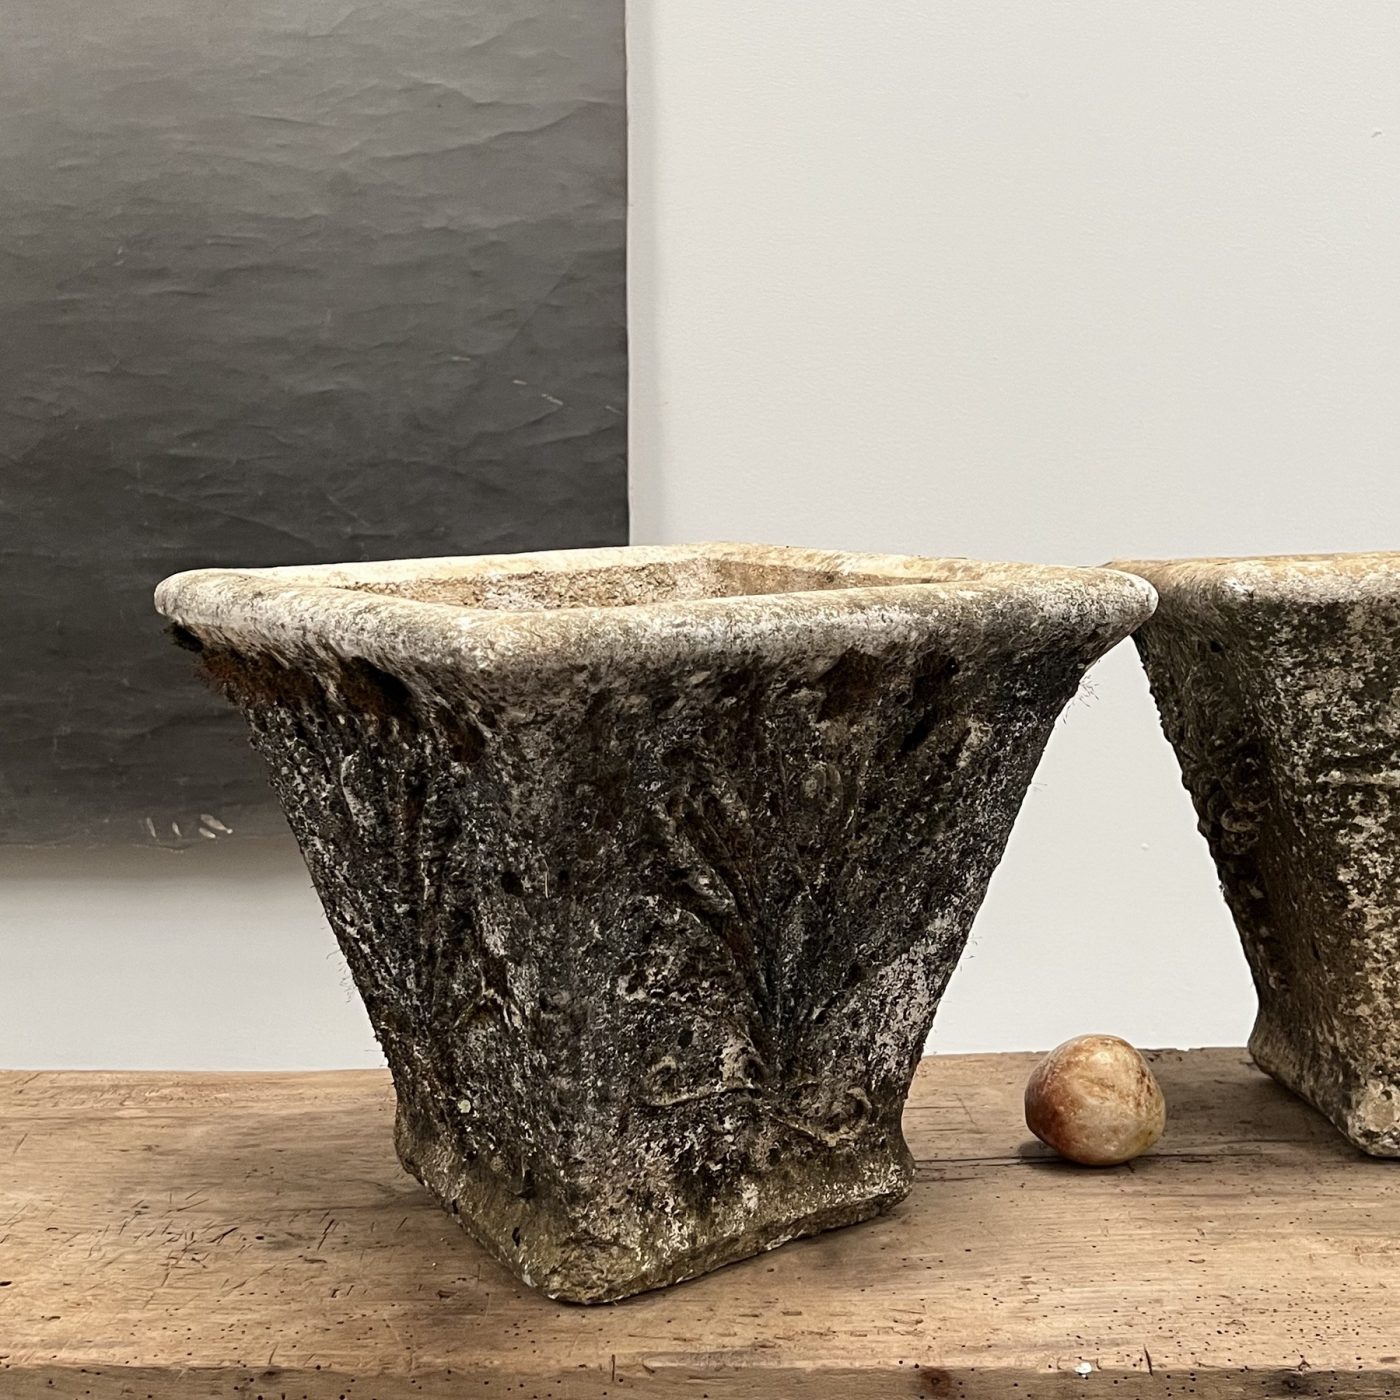 objet-vagabond-concrete-urns0003